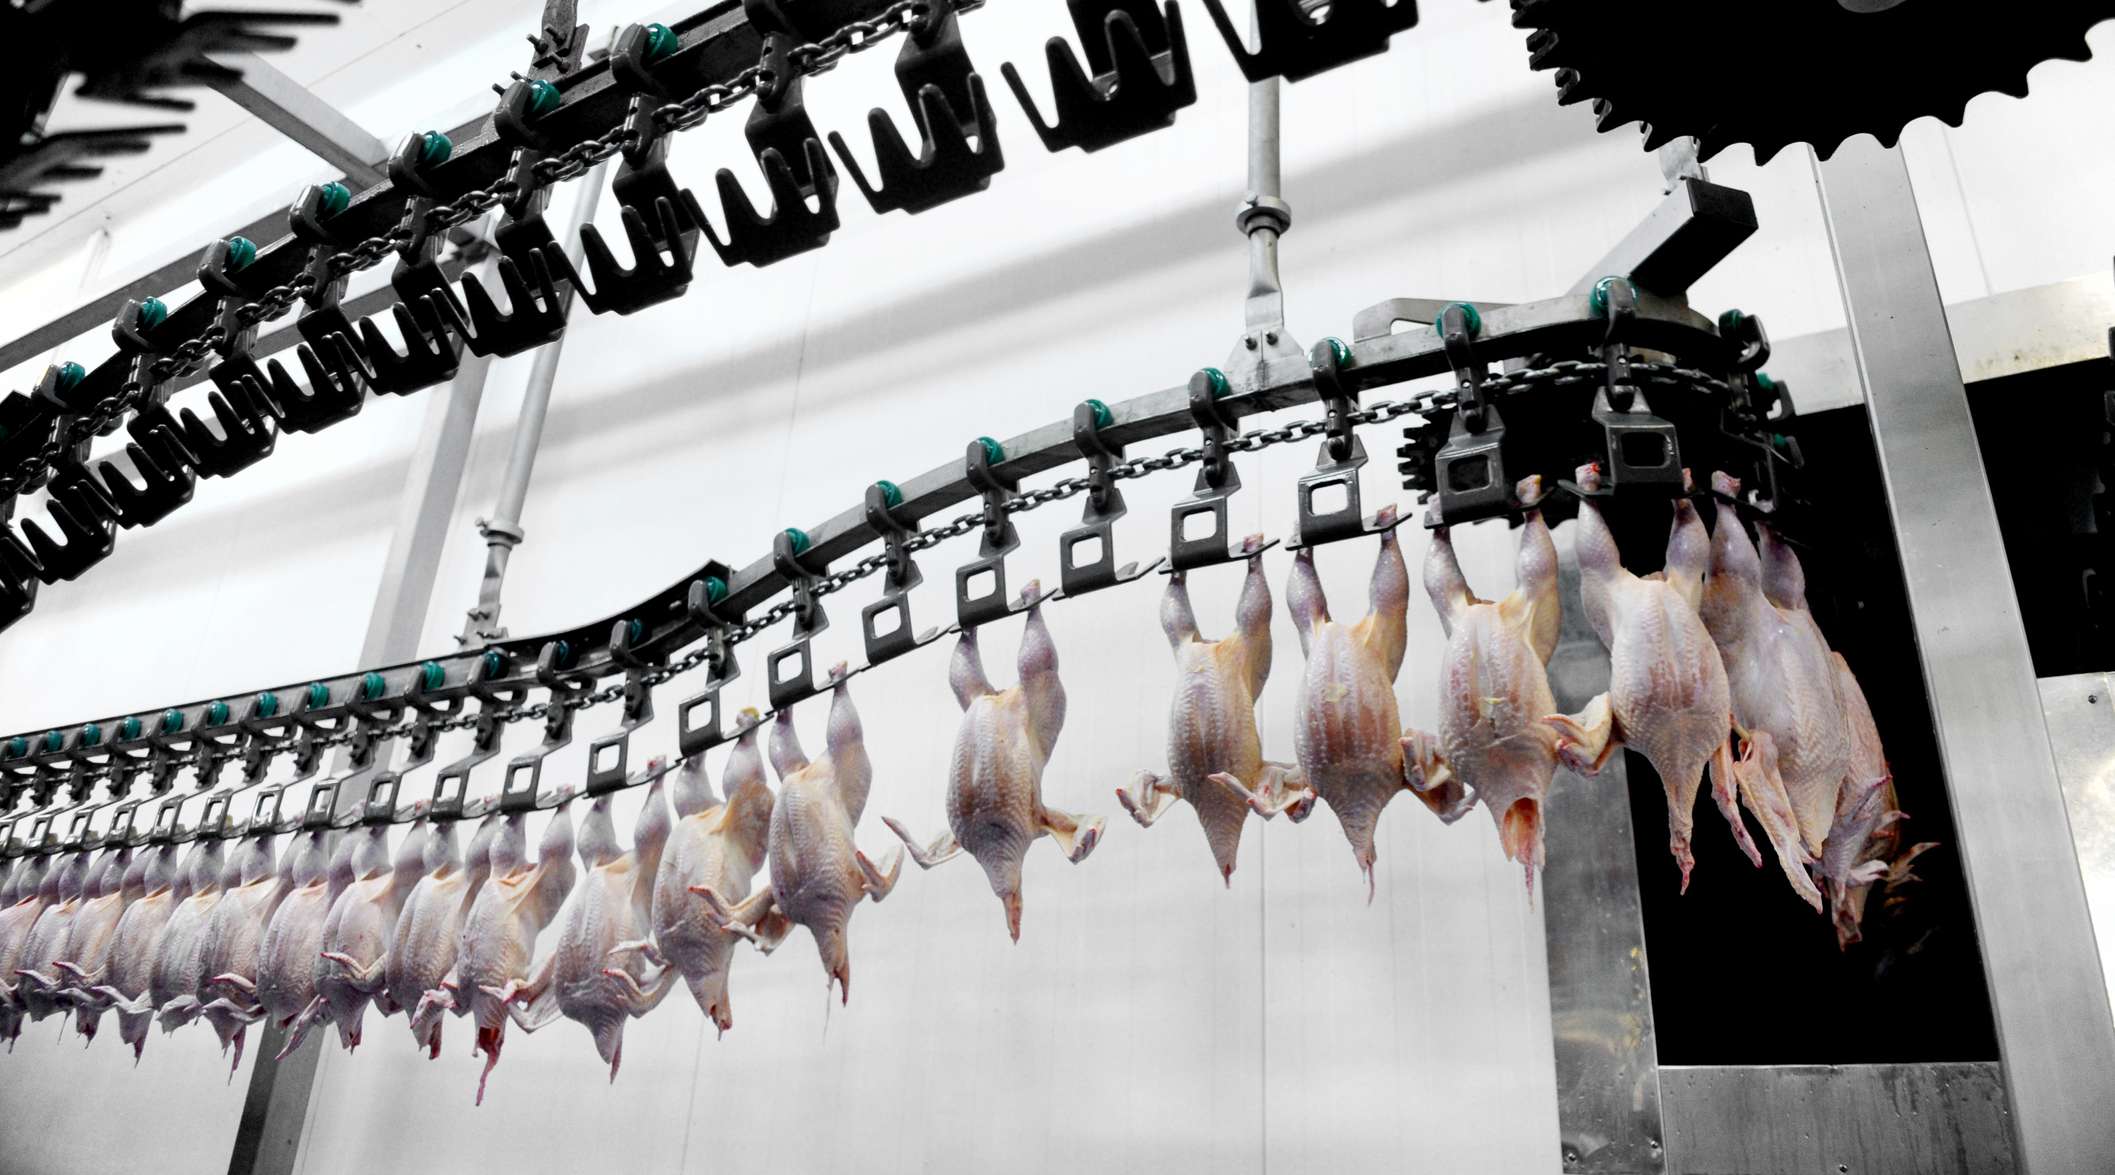 Allianz - Strafrechtsschutzversicherung: Fleischfabrik von innen, gerupfte Hühner hängen am Laufband